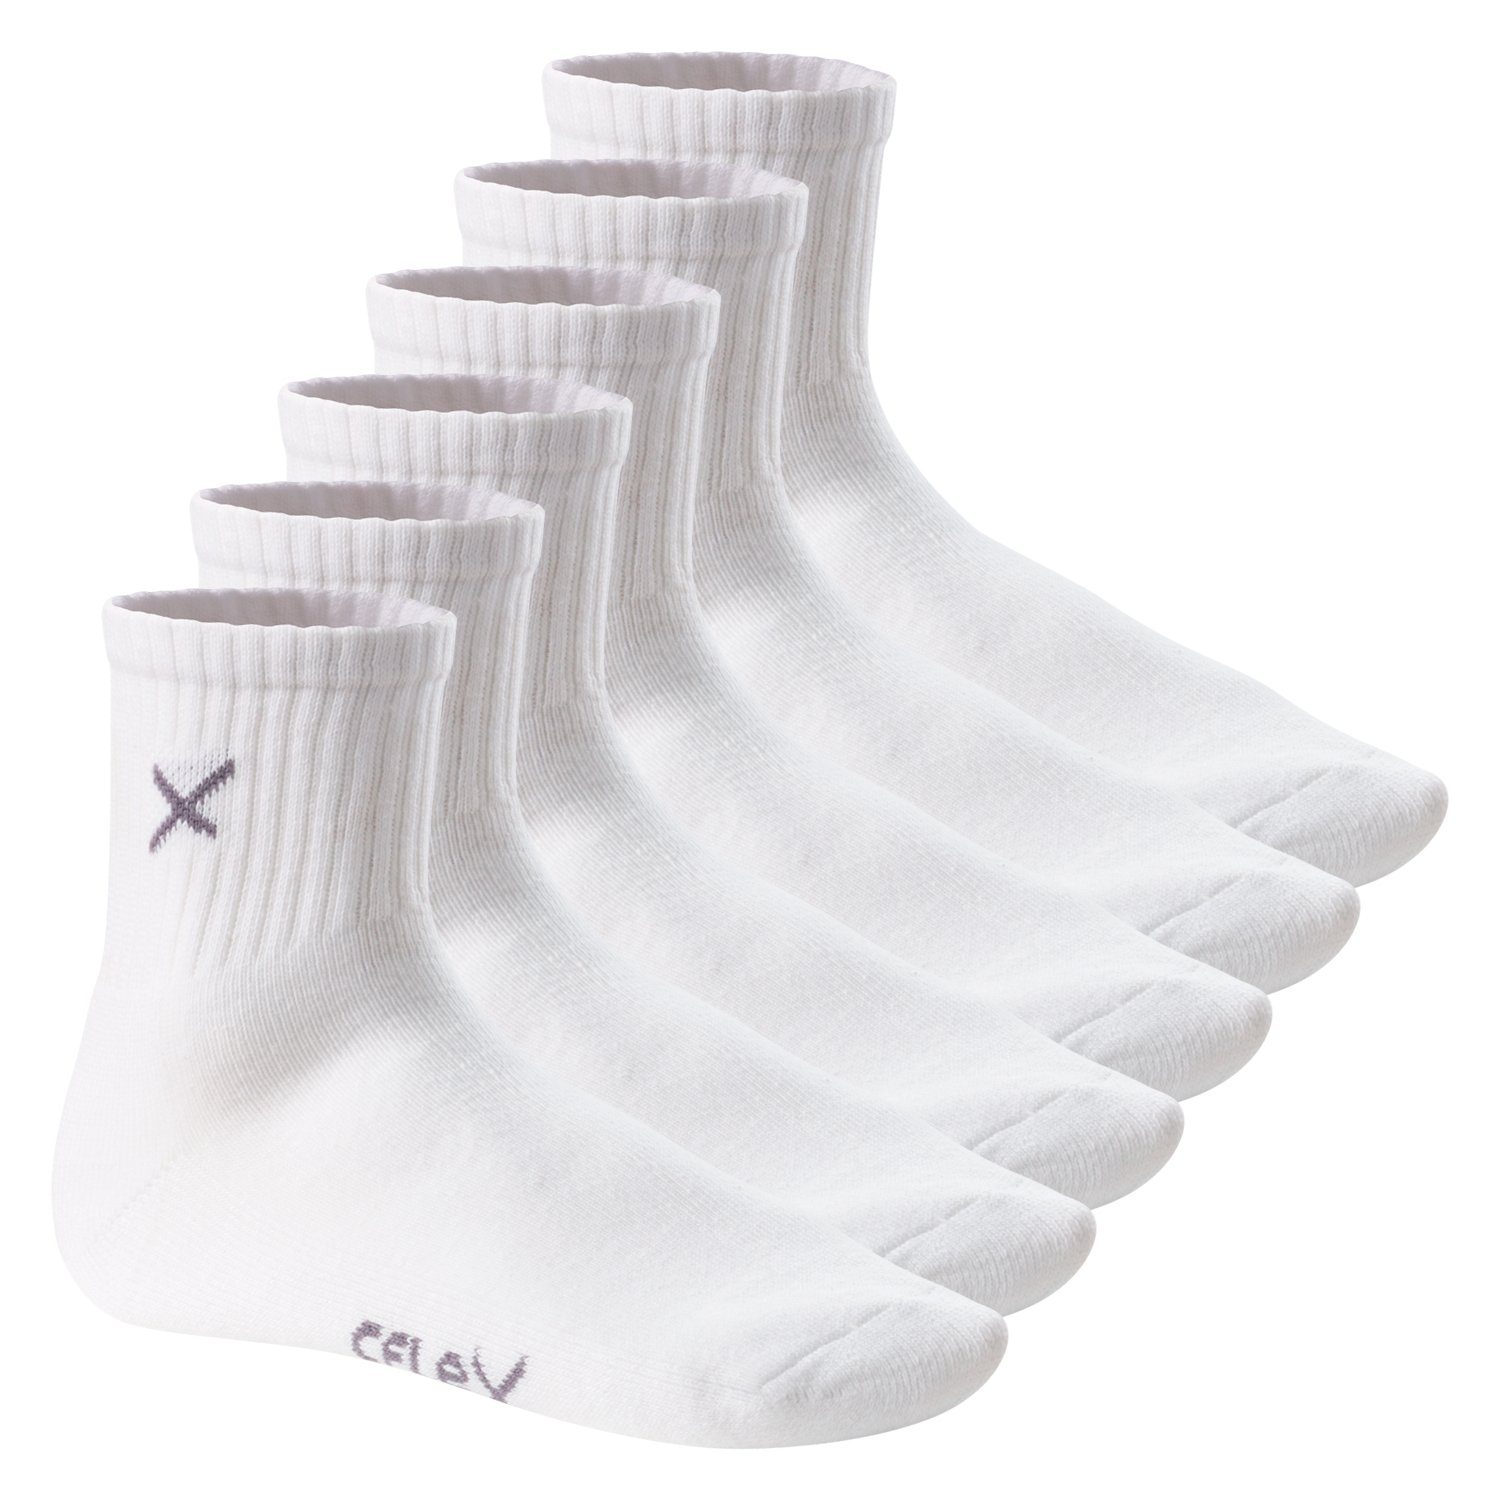 CFLEX Sportsocken Lifestyle Damen & White Short (6 Socks Herren Crew Paar)